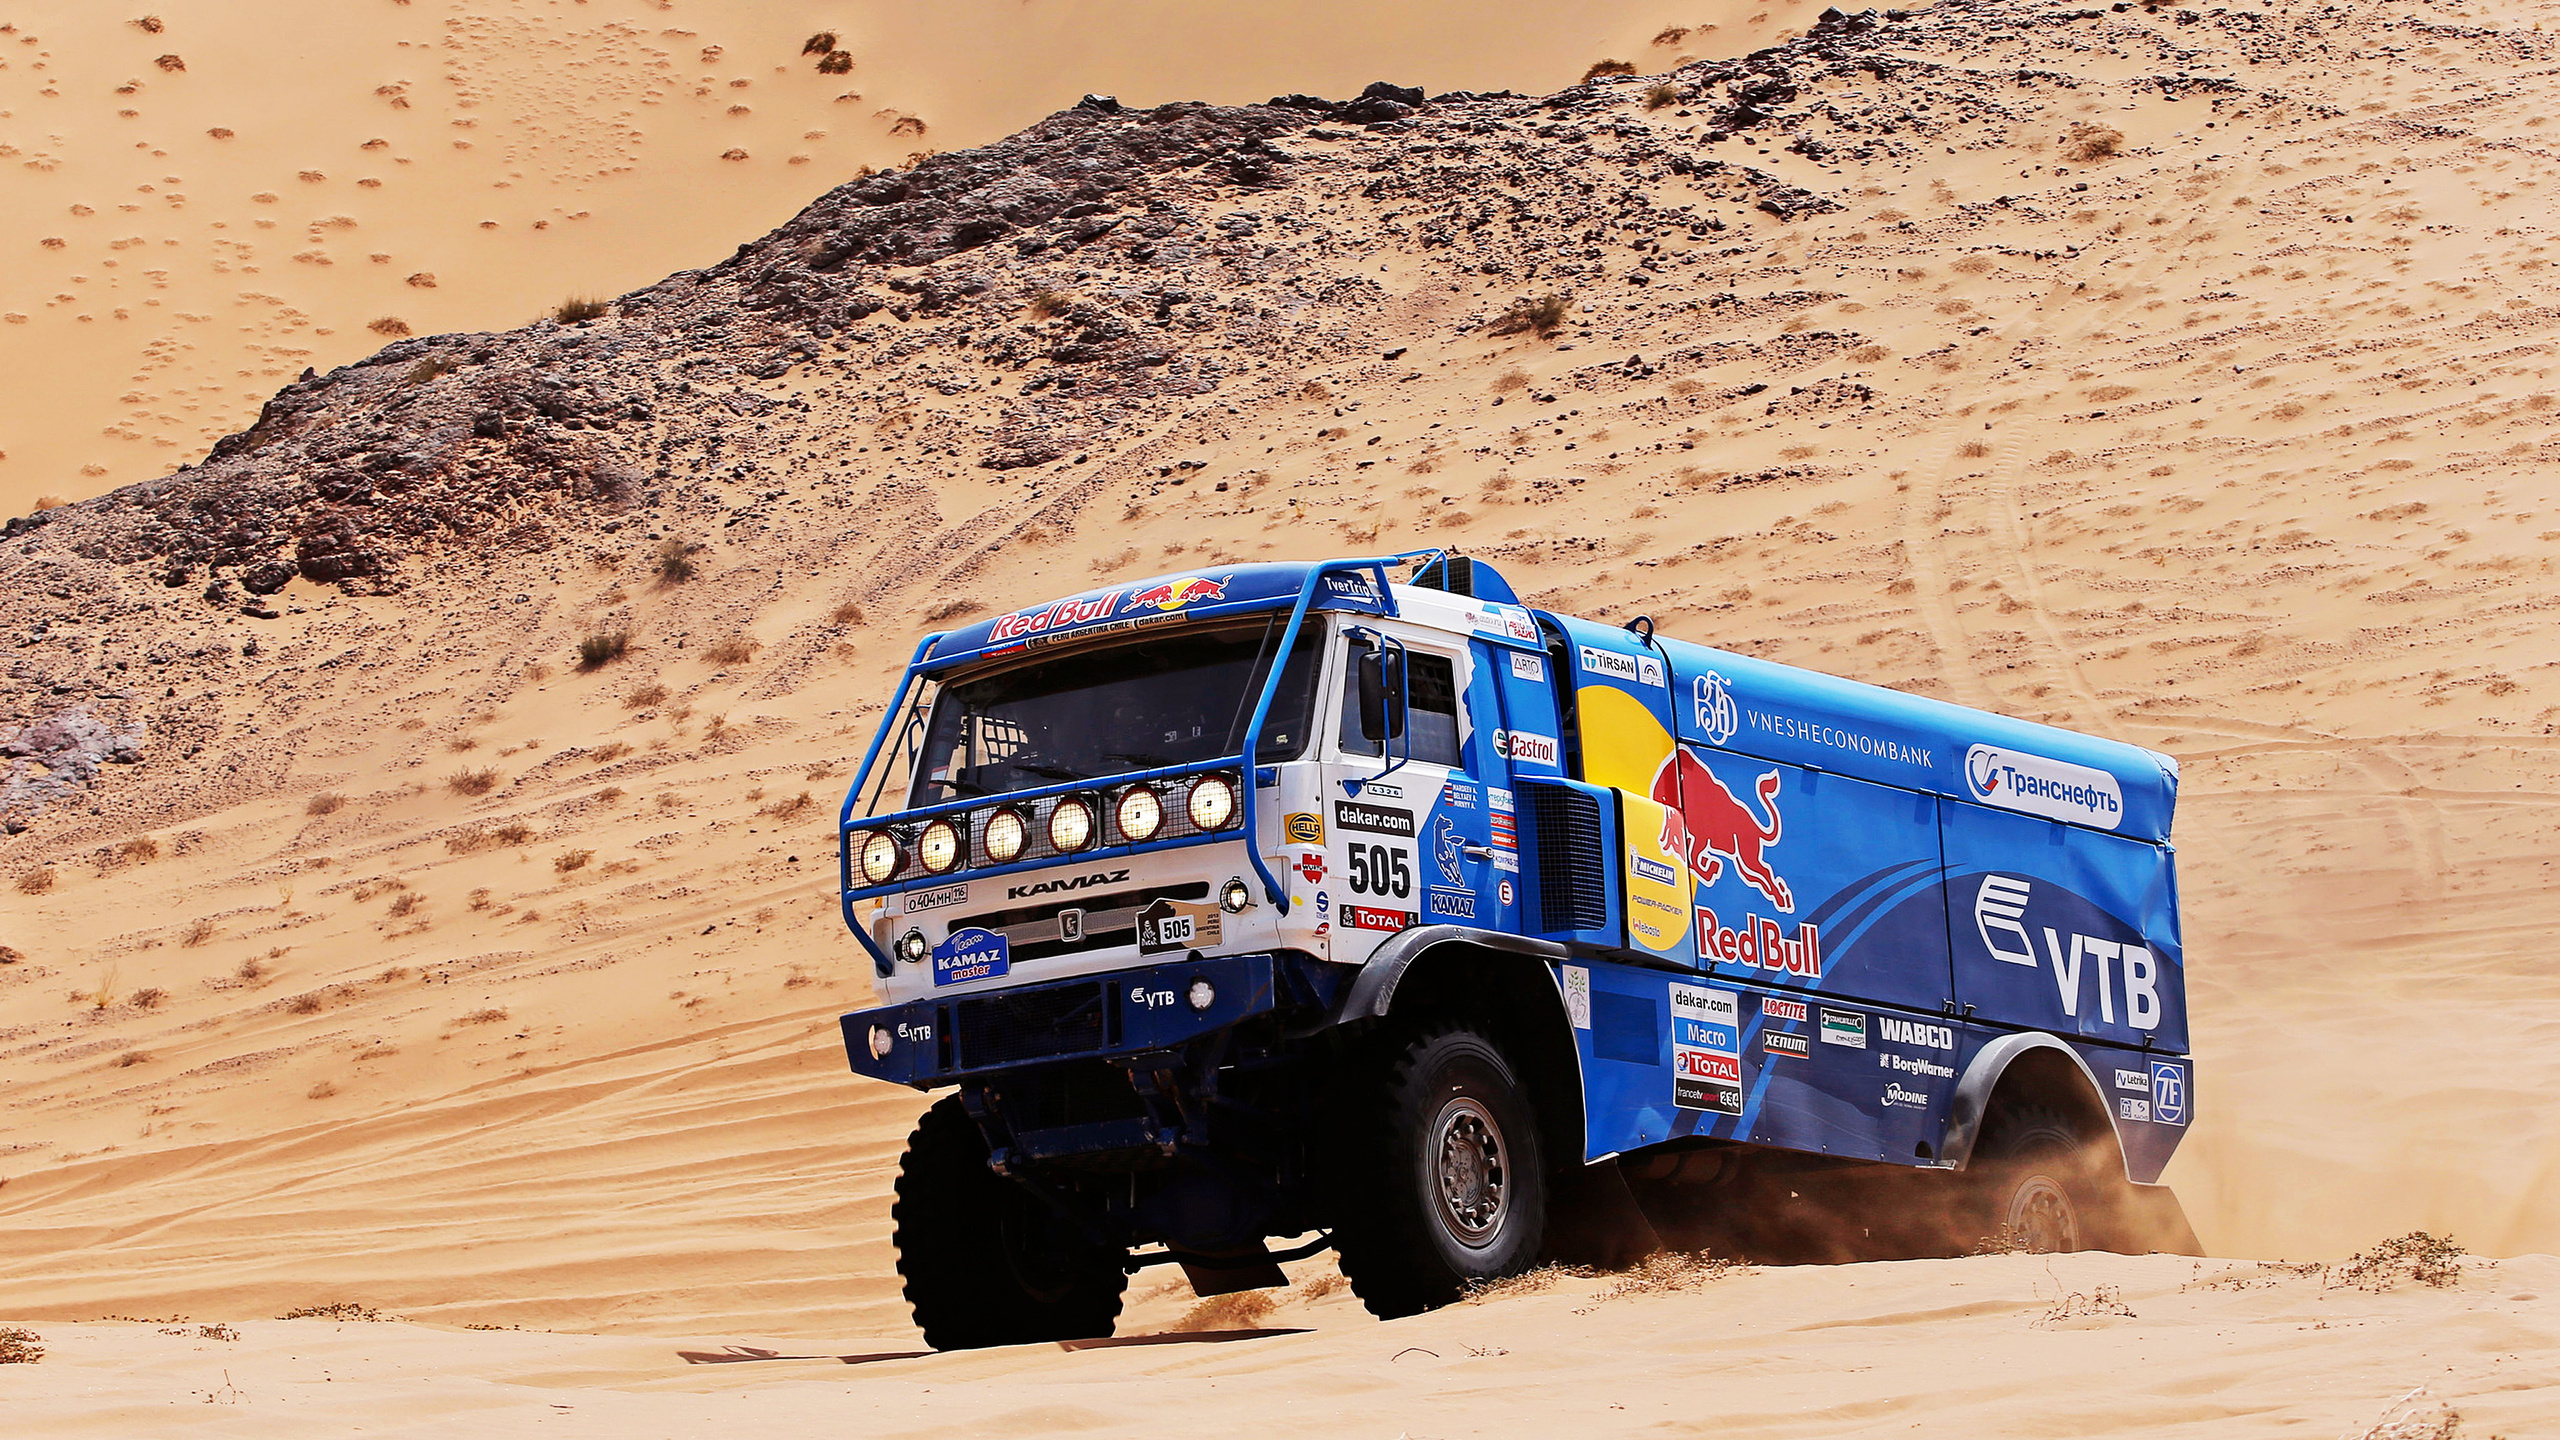 Blau-weißer Jeep-Wrangler in Der Wüste Tagsüber. Wallpaper in 2560x1440 Resolution